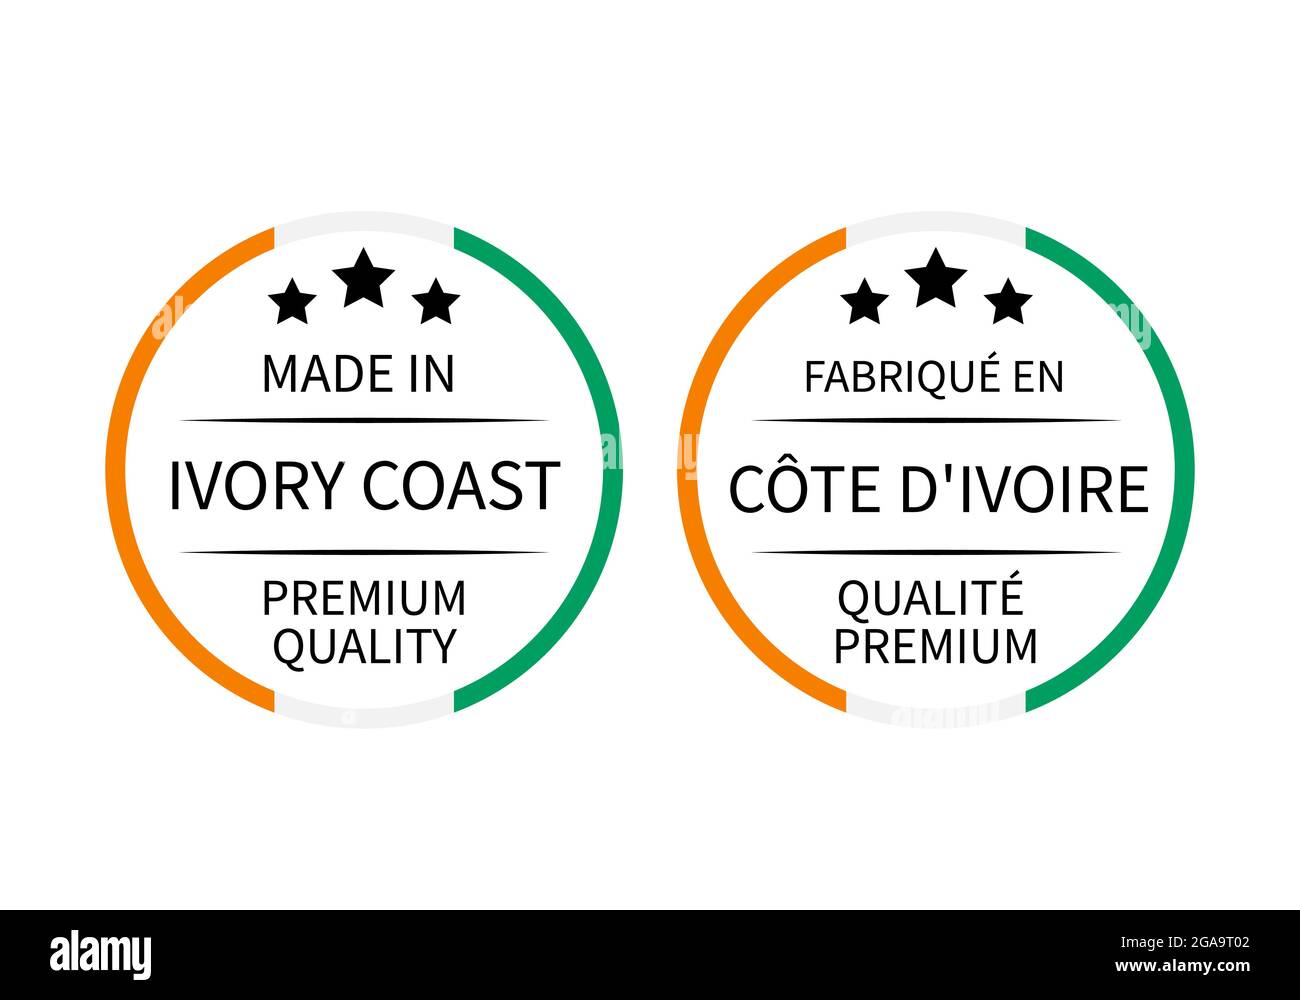 Fabriqué en Côte d'Ivoire, les étiquettes rondes sont en anglais et en  français. Icône de vecteur de repère de qualité. Idéal pour le logo, les  étiquettes, les badges, les autocollants et l'emblème